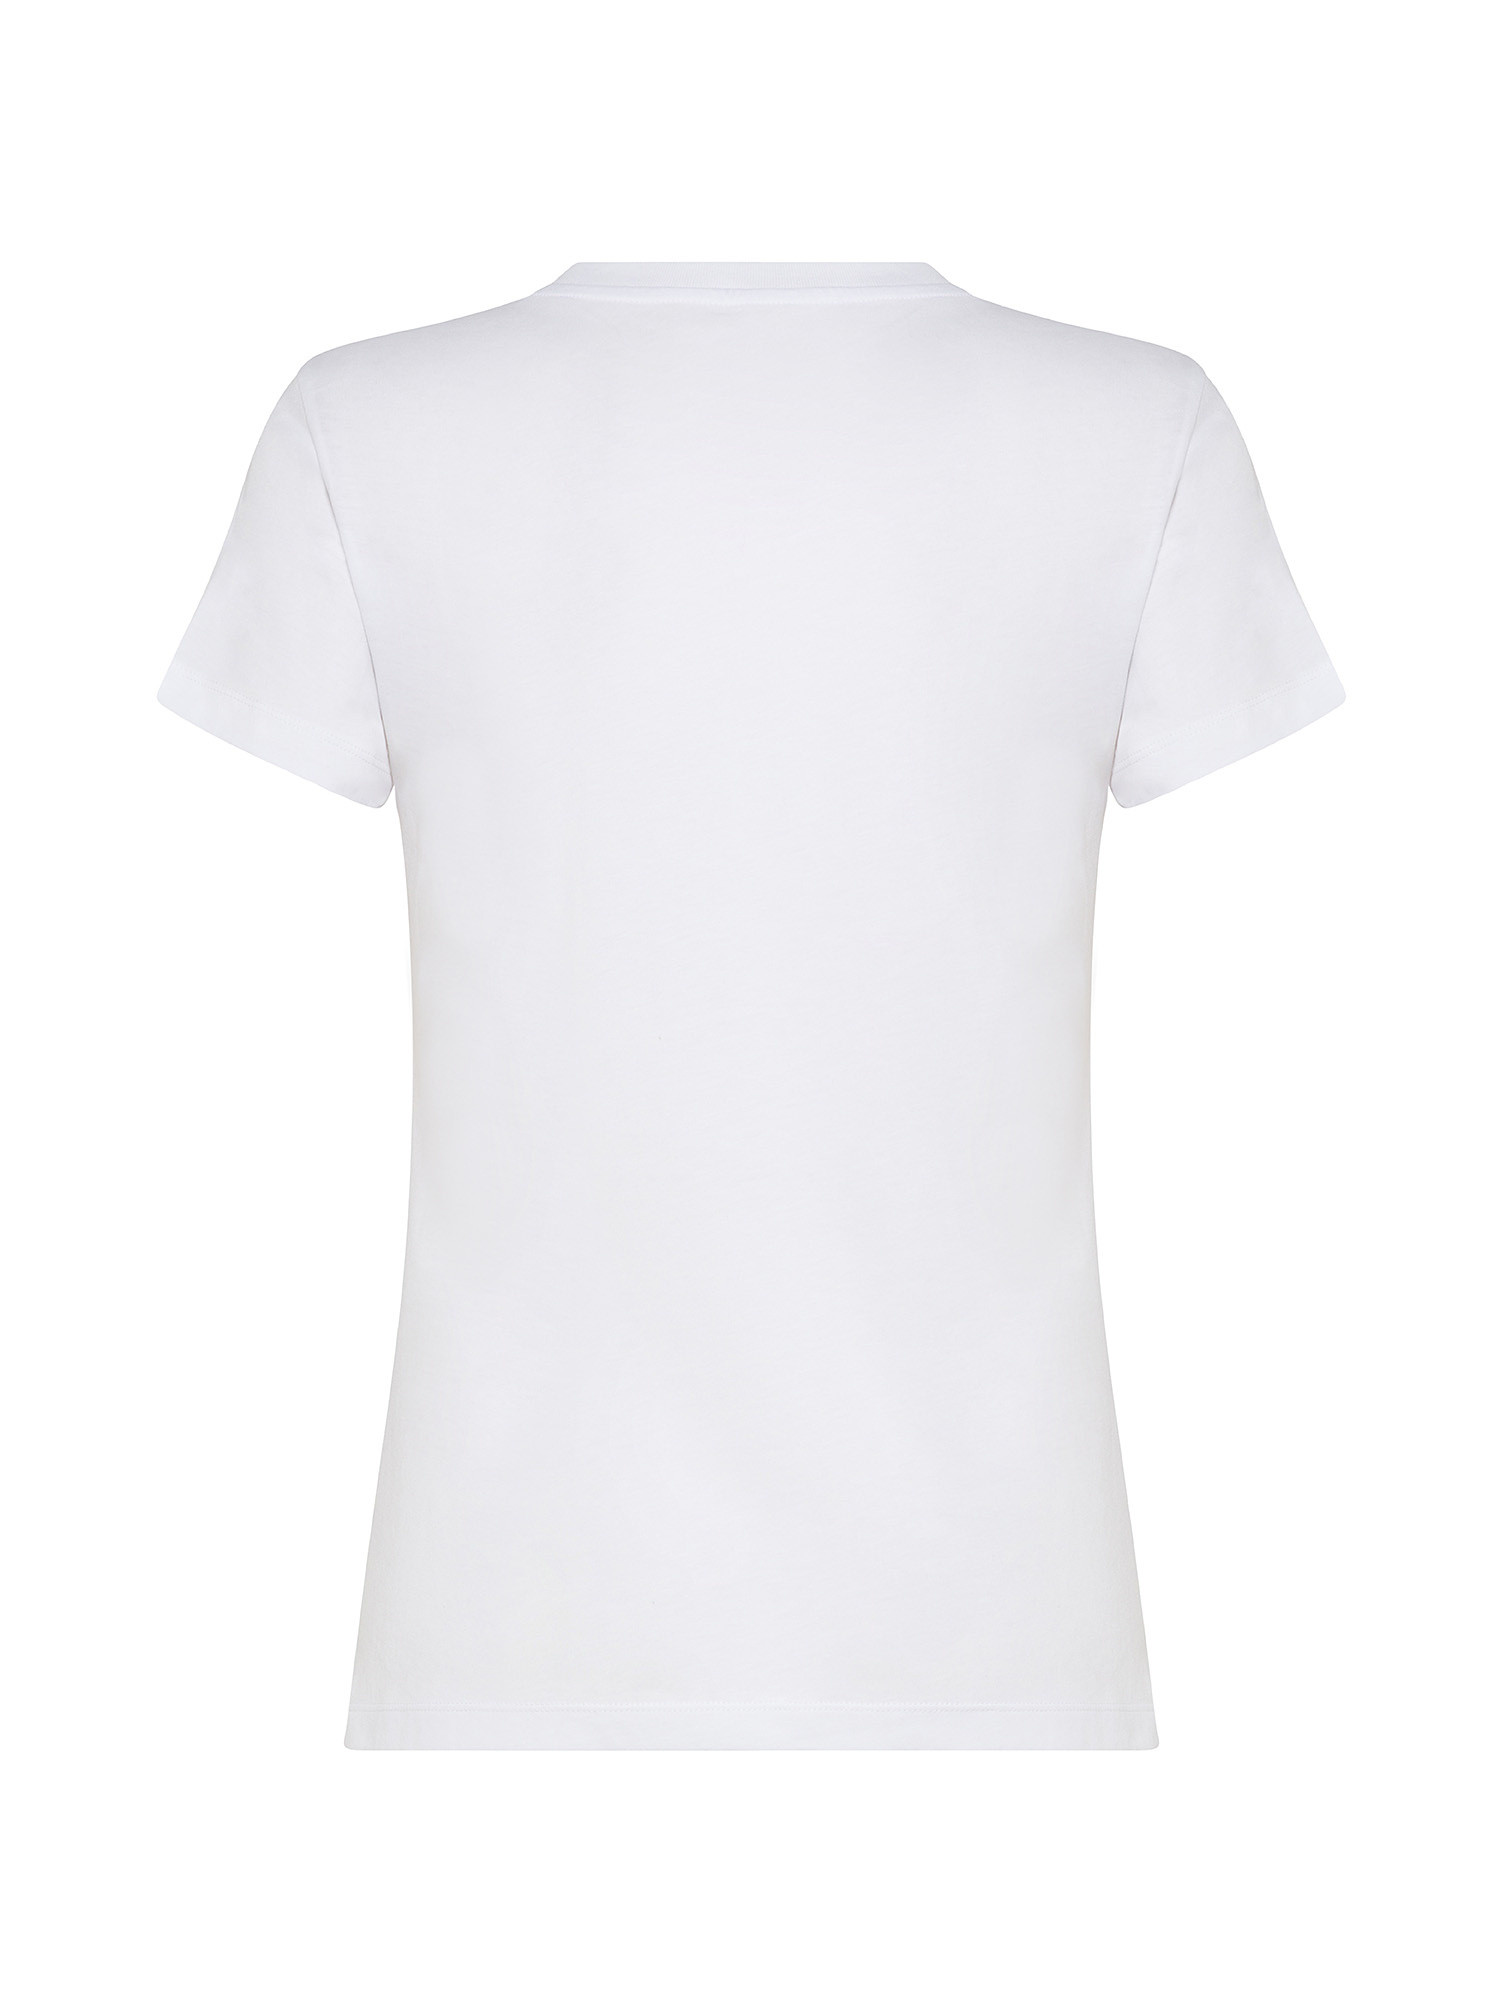 Armani Exchange - T-shirt girocollo con stampa, Bianco, large image number 1